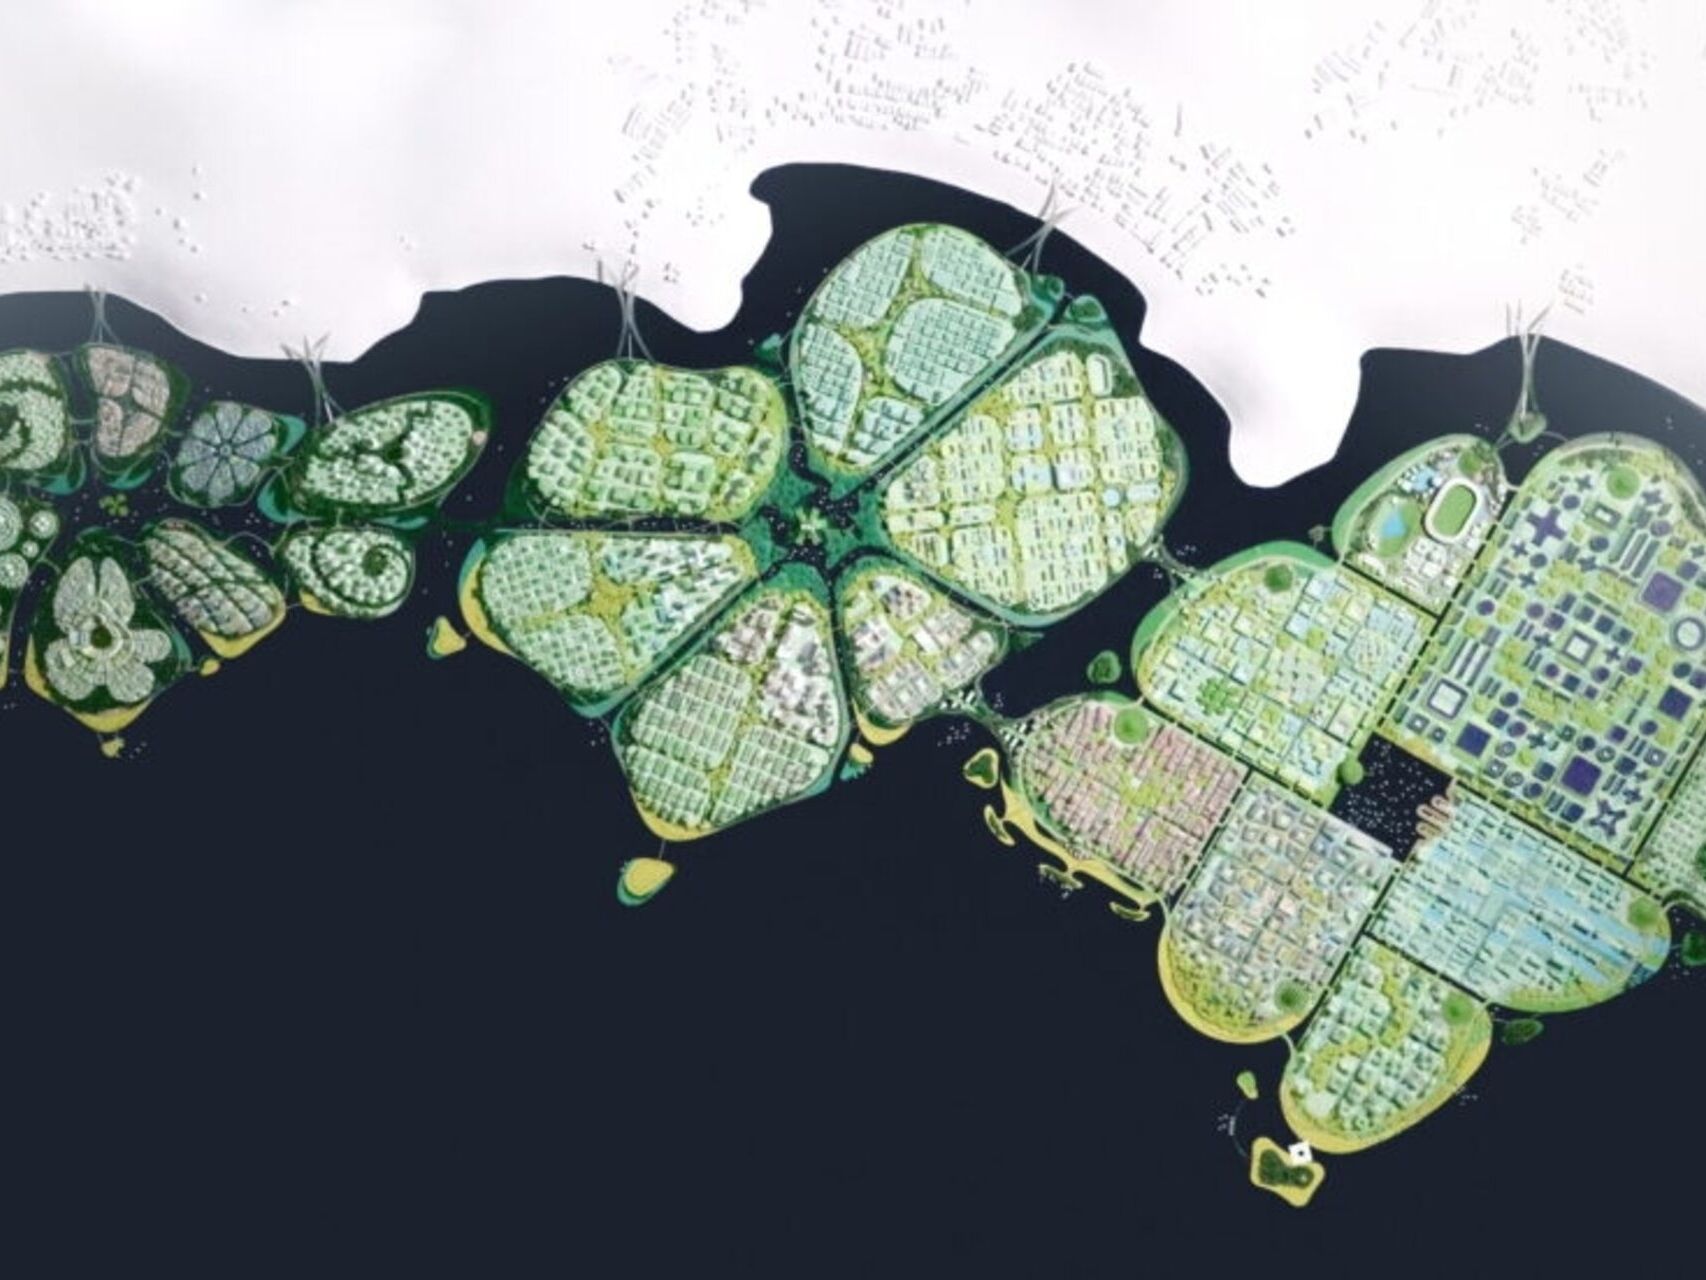 BiodiverCity: изображение от въздуха на трите острова The Channels, The Mangroves и The Lagoon, които ще оформят иновативния и устойчив град BiodiverCity през 2030 г. в Малайзия близо до Пенанг